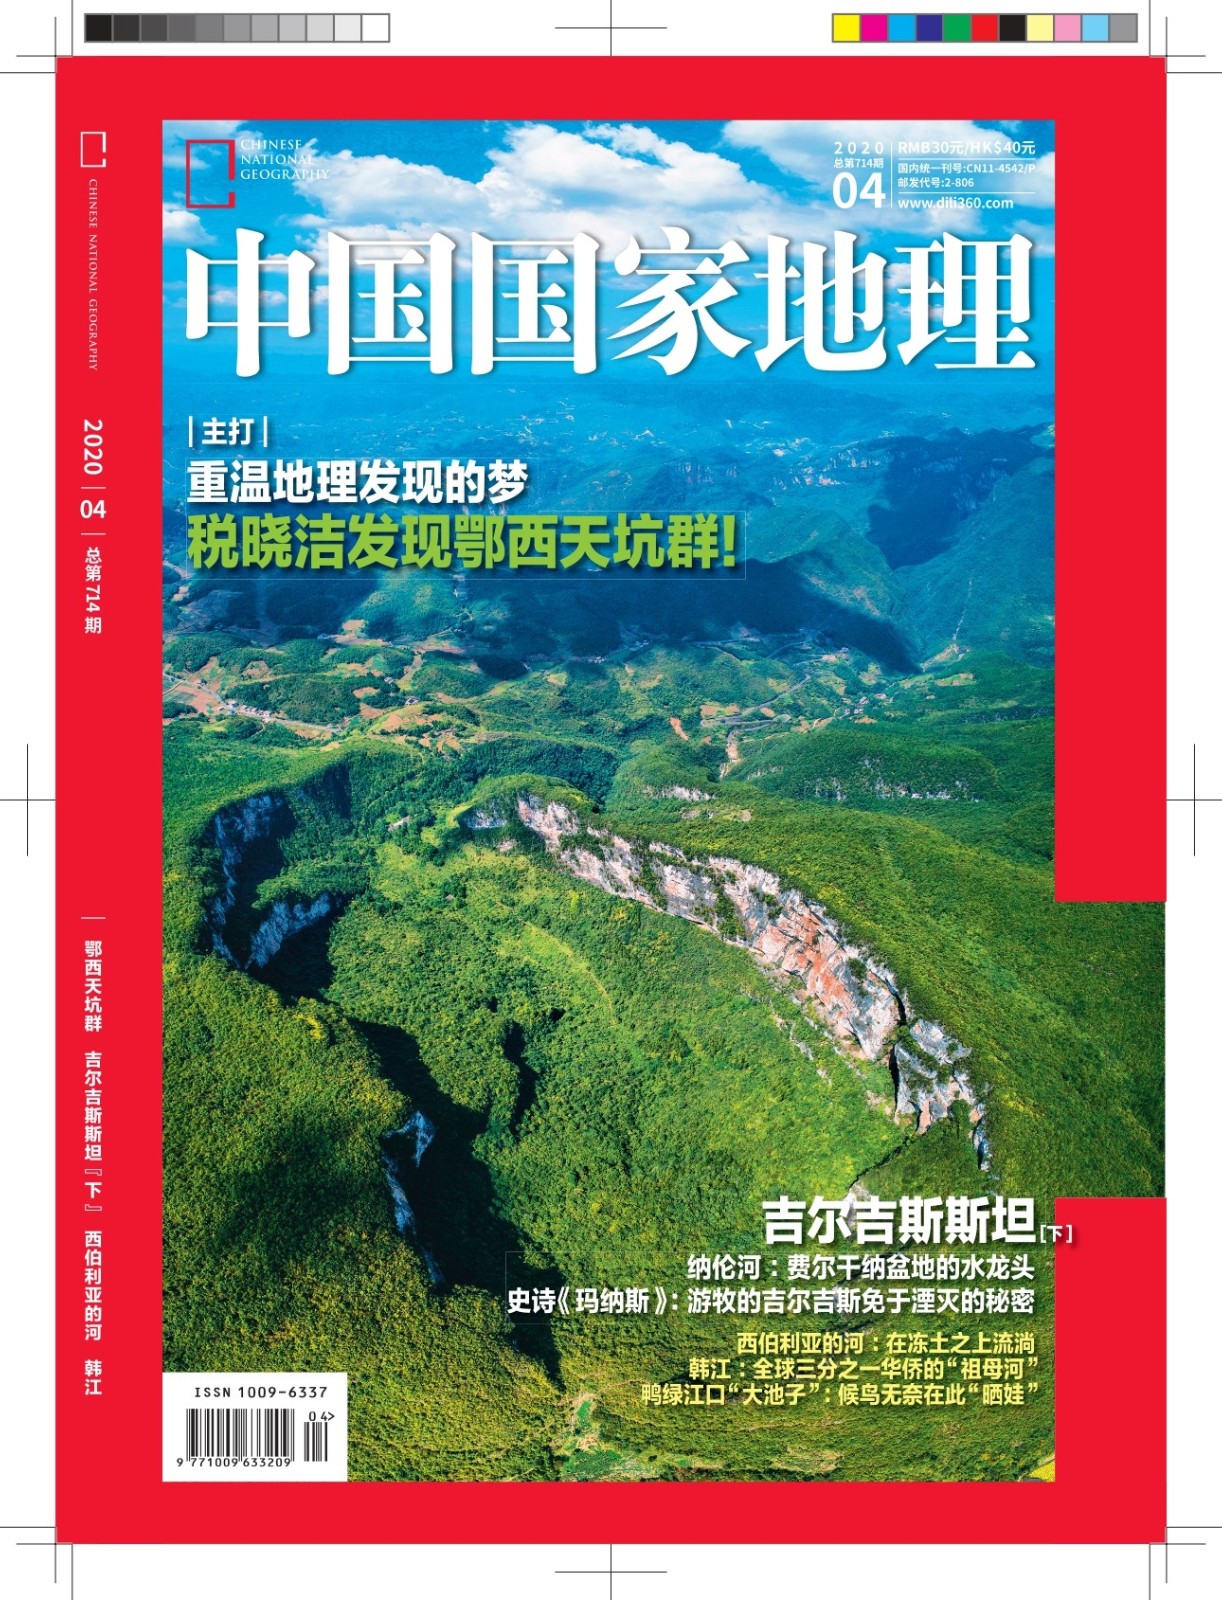 ​ Chinese National Geography посвятил выпуск Кыргызстану